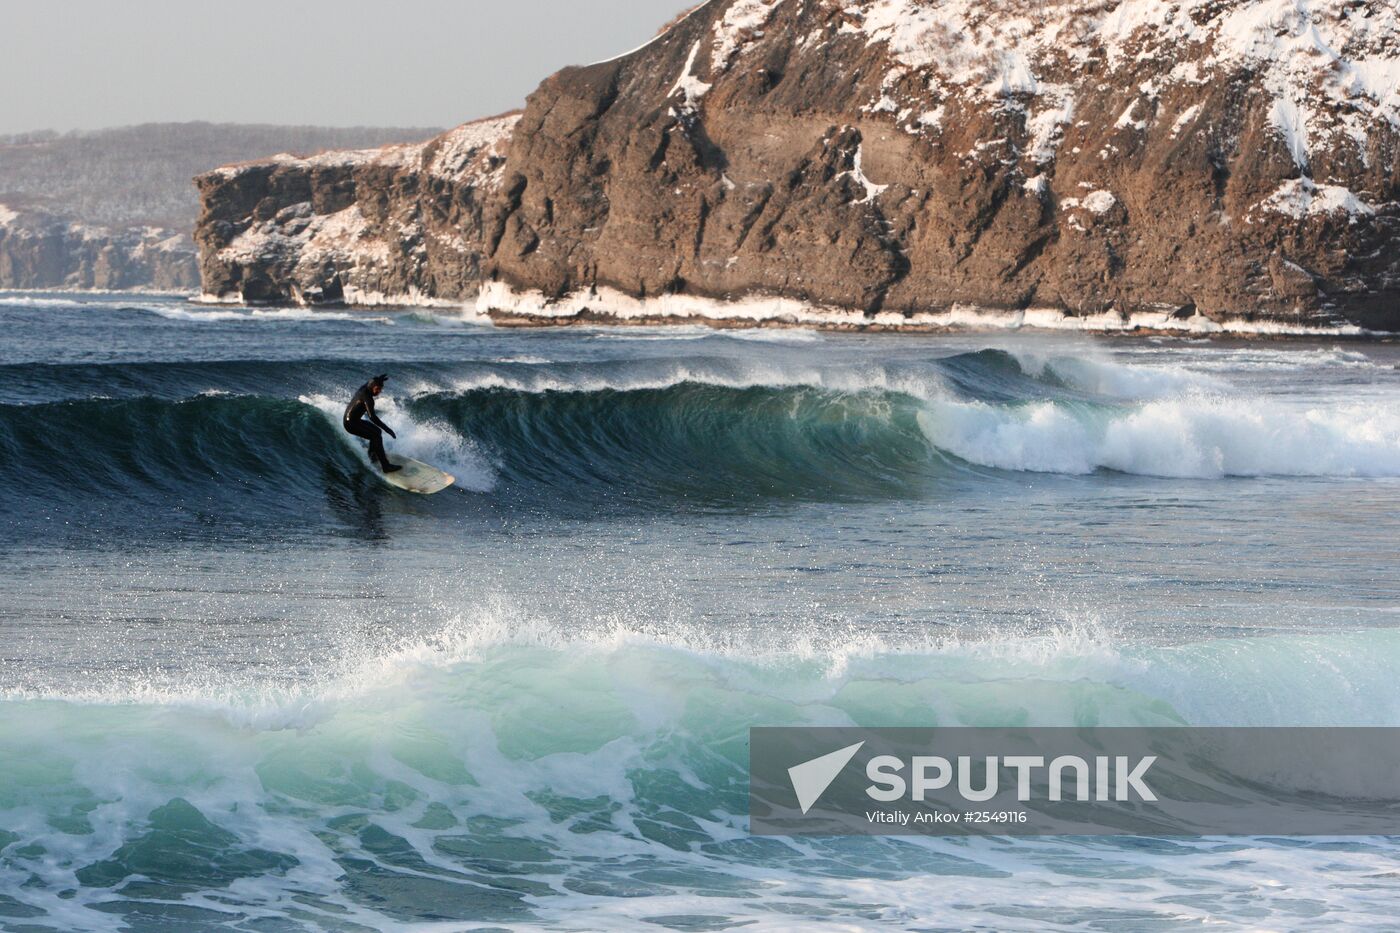 Winter surfing on Russky island